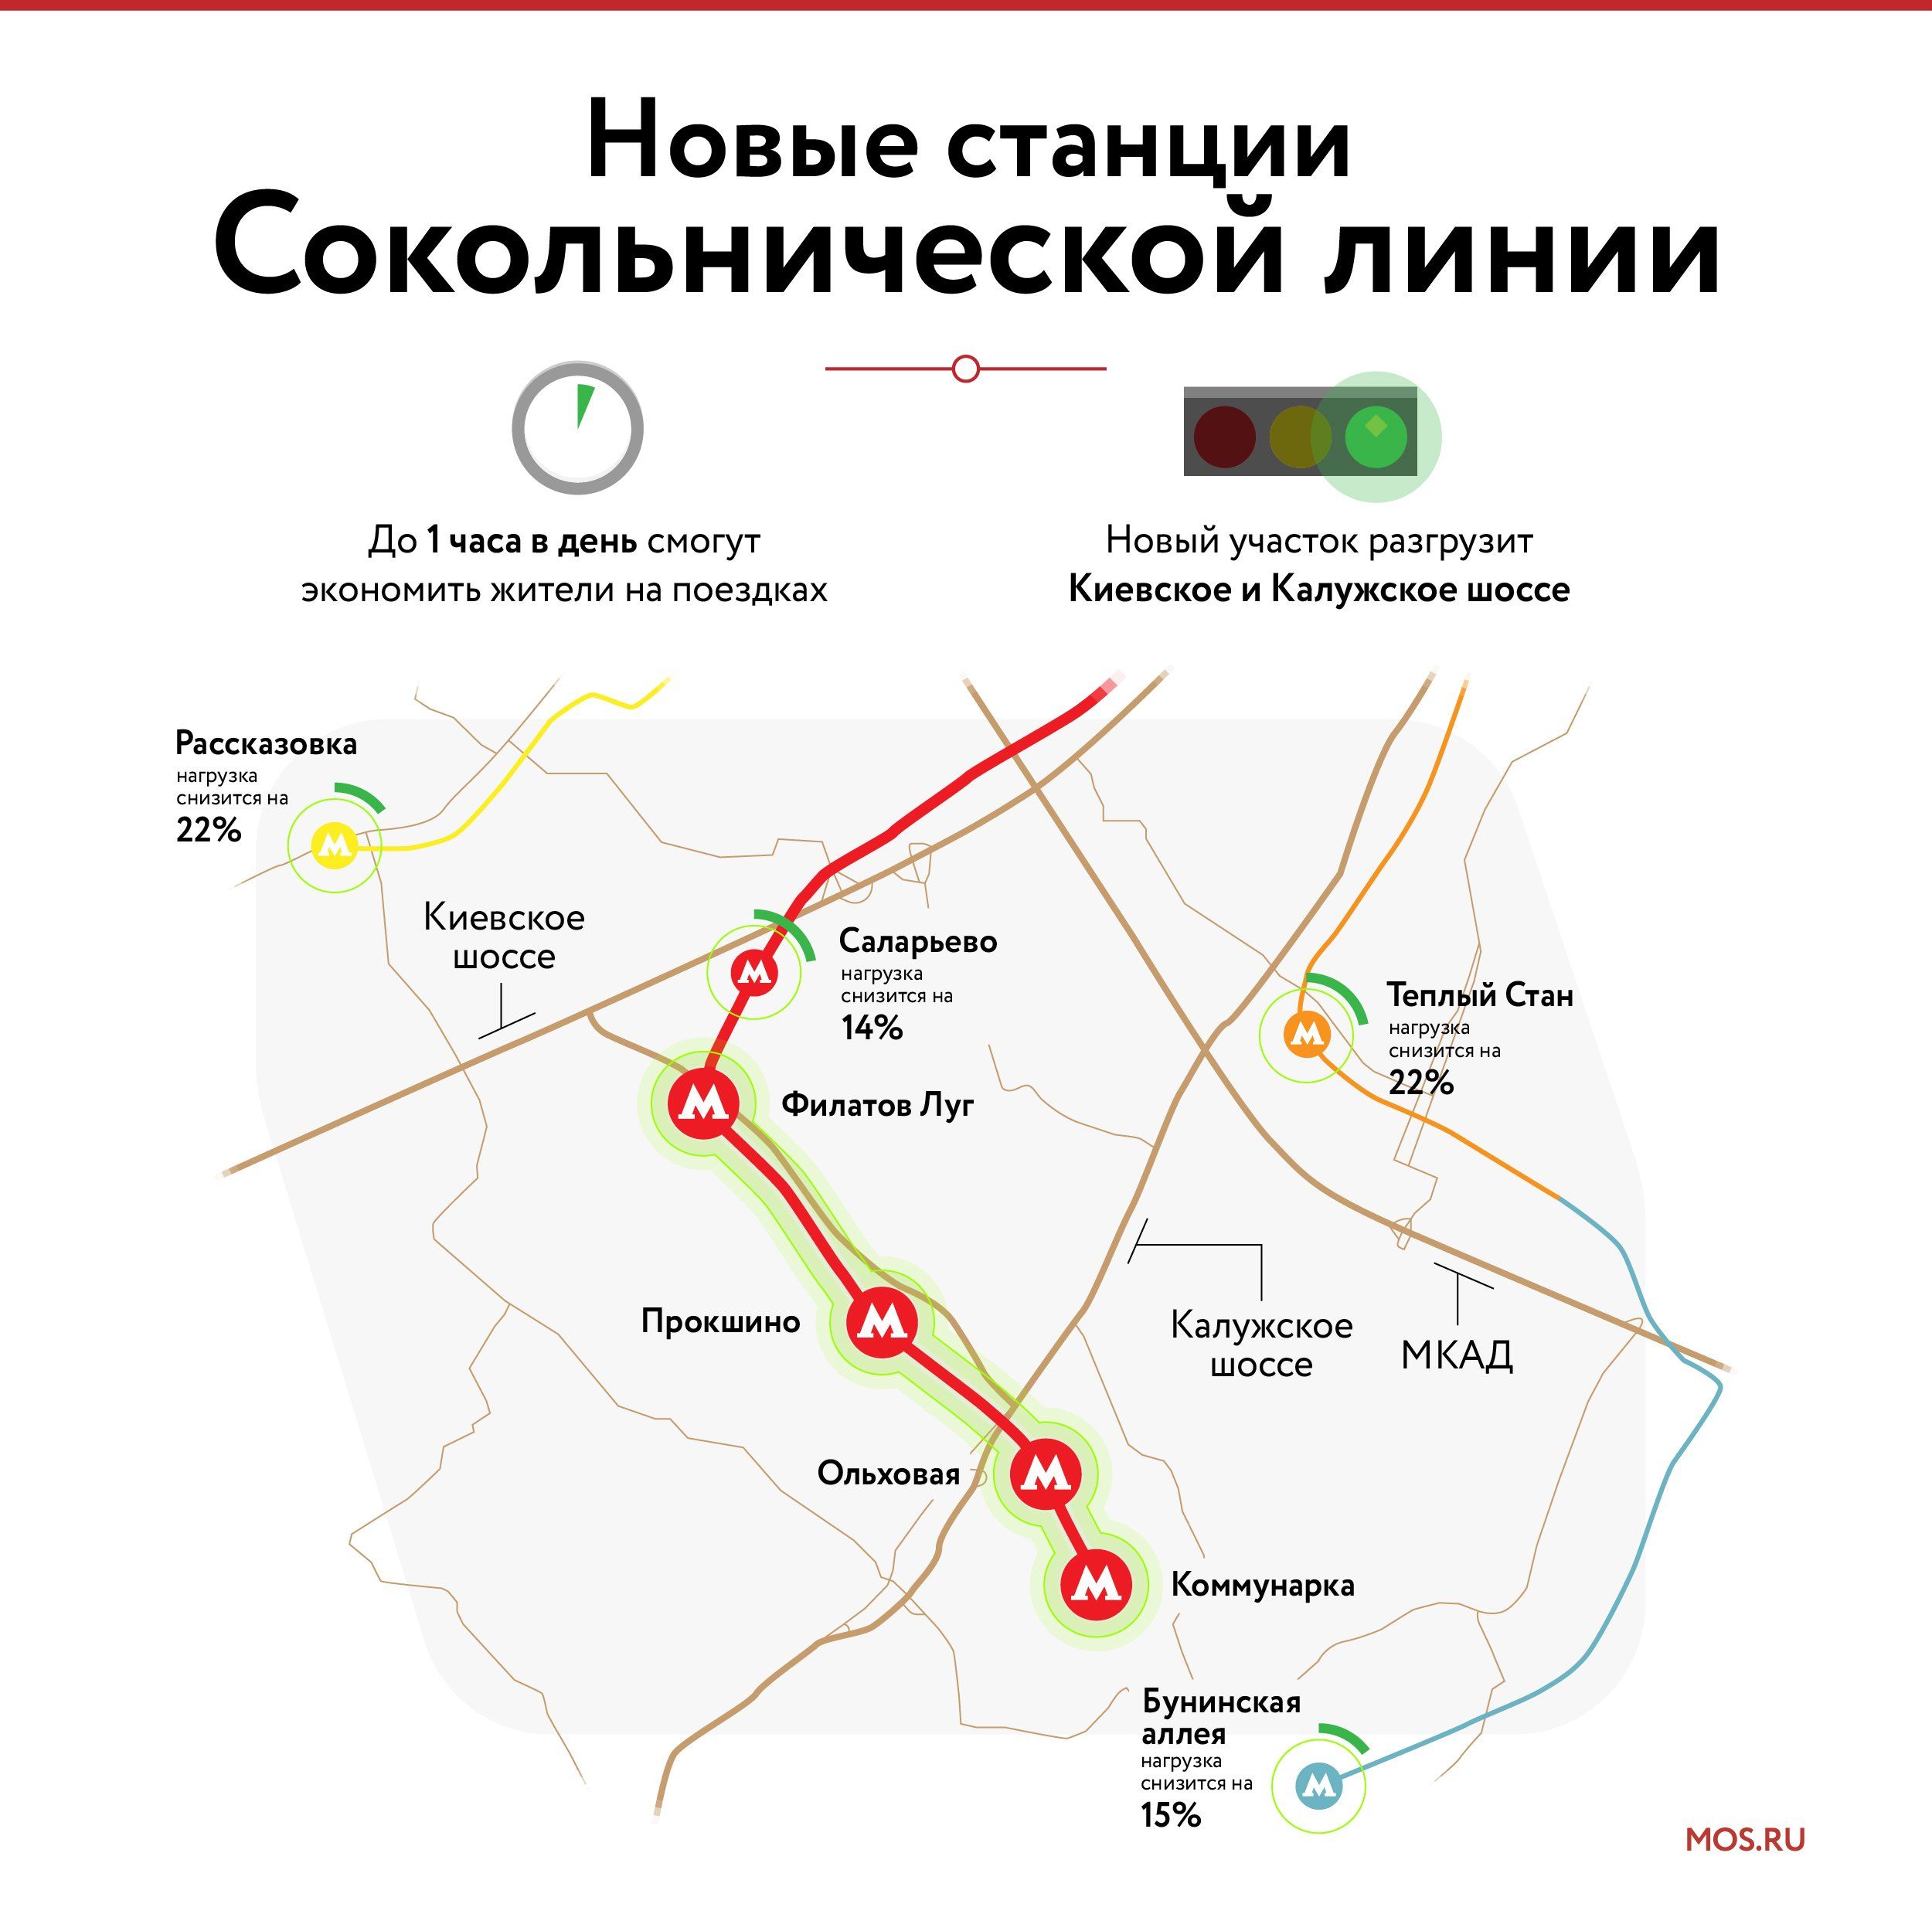 От «Саларьева» до «Коммунарки»: запущен новый участок Сокольнической линии метро